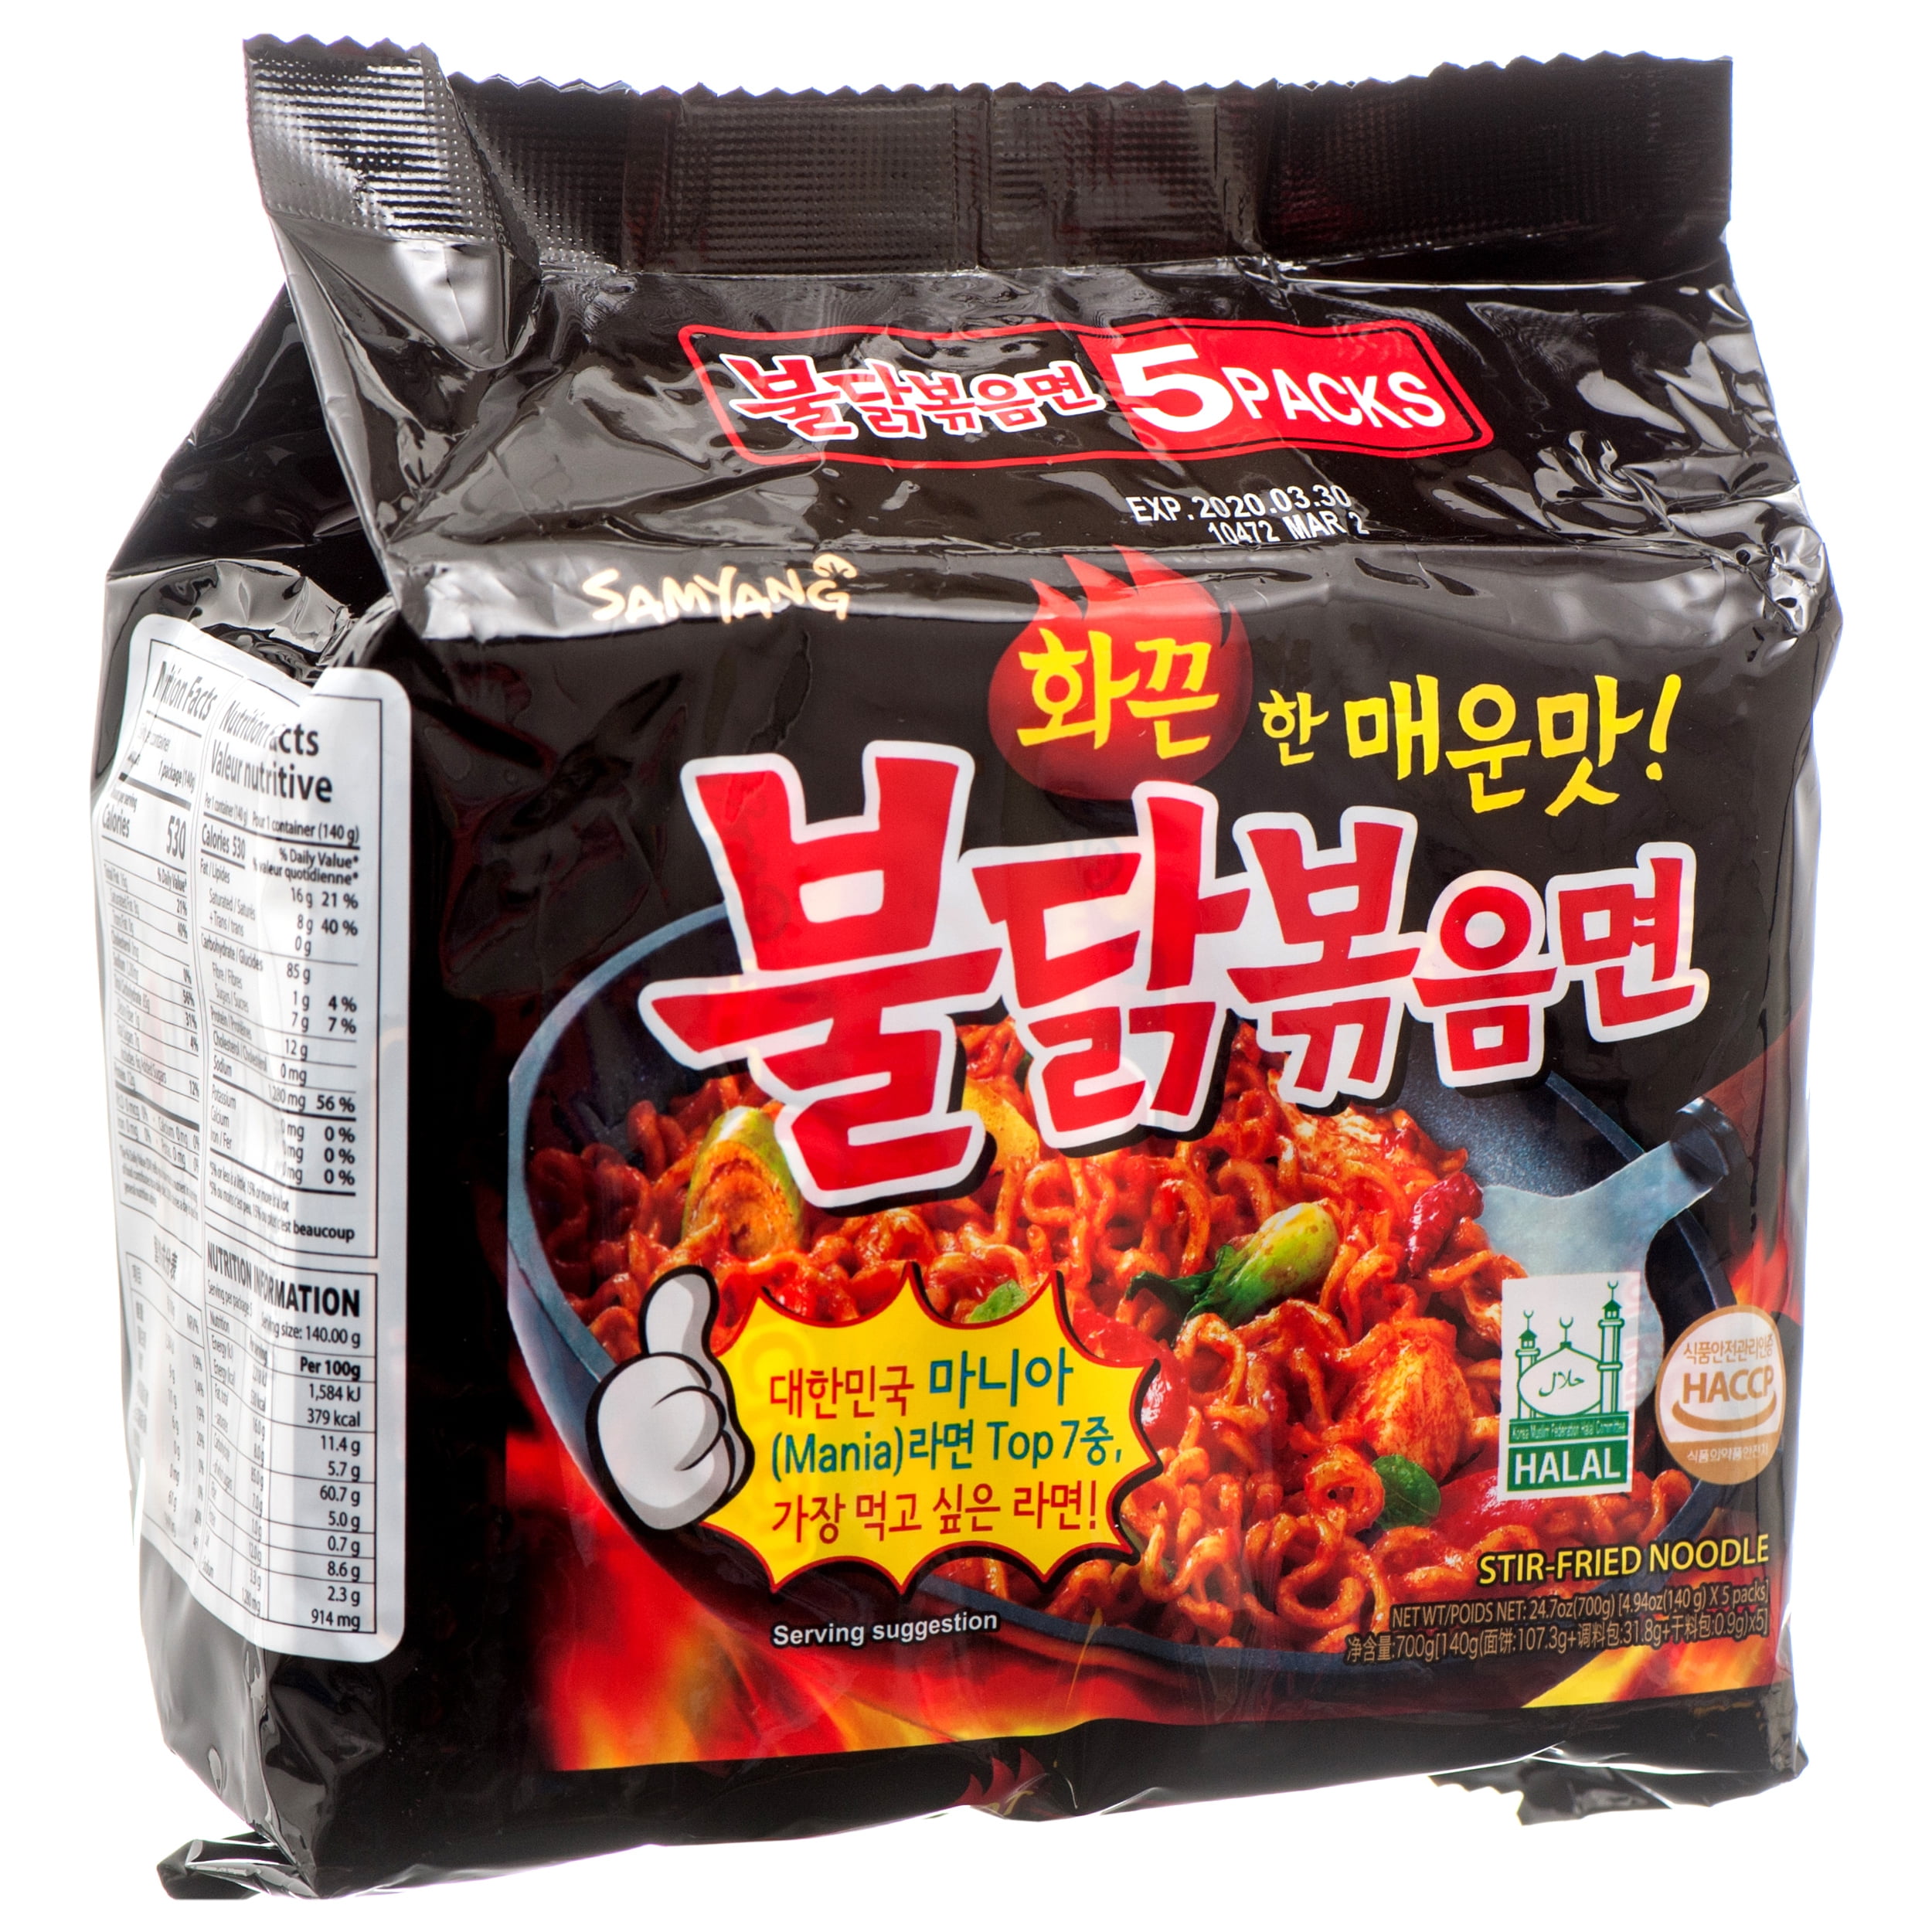 Samyang Hot Chicken Stir Fried Ramen Noodle Soup 4.93 oz. Bag (5 Pack)